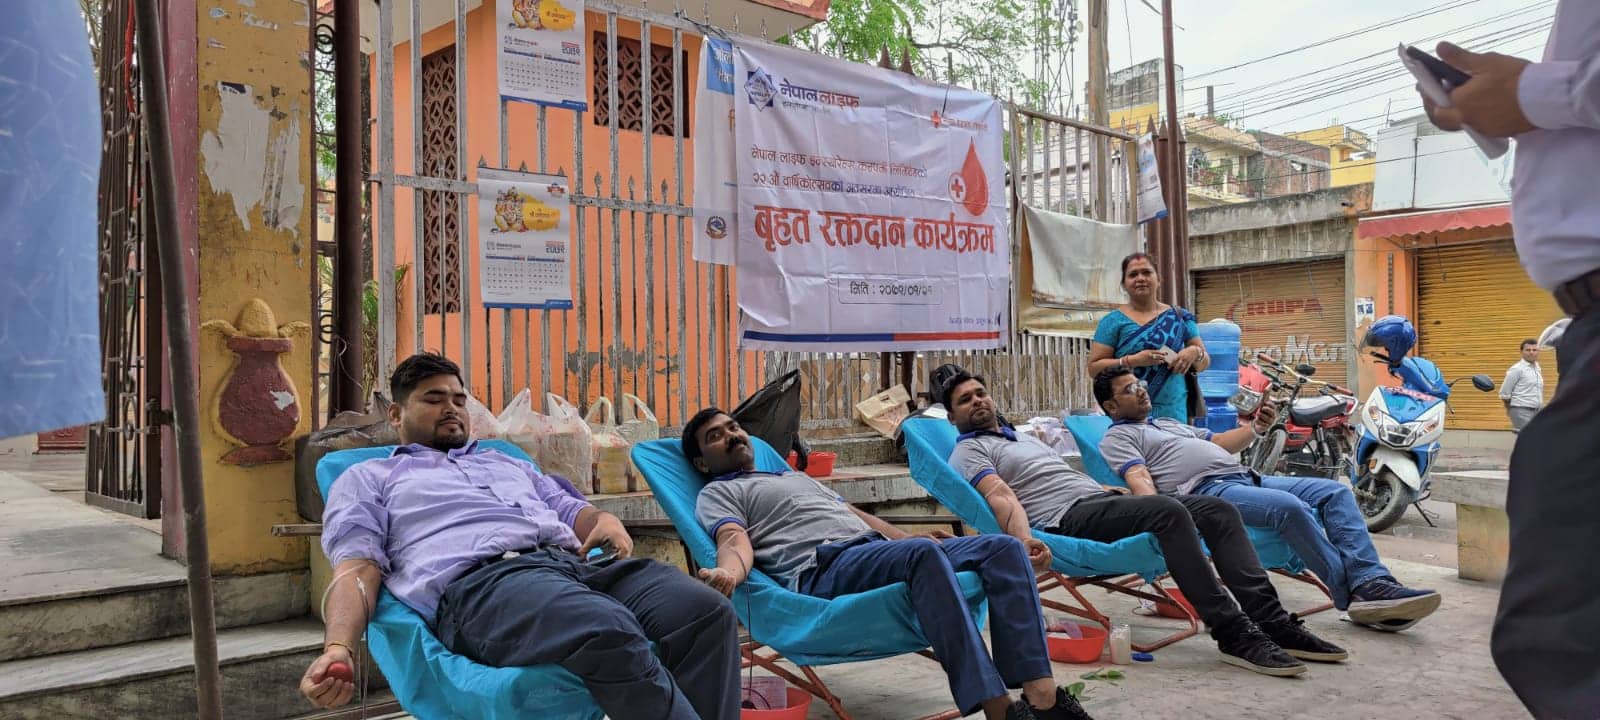 २२ औं वर्षमा प्रवेश गरेको अवसरमा नेपाल लाइफद्धारा रक्तदान कार्यक्रमको आयोजना